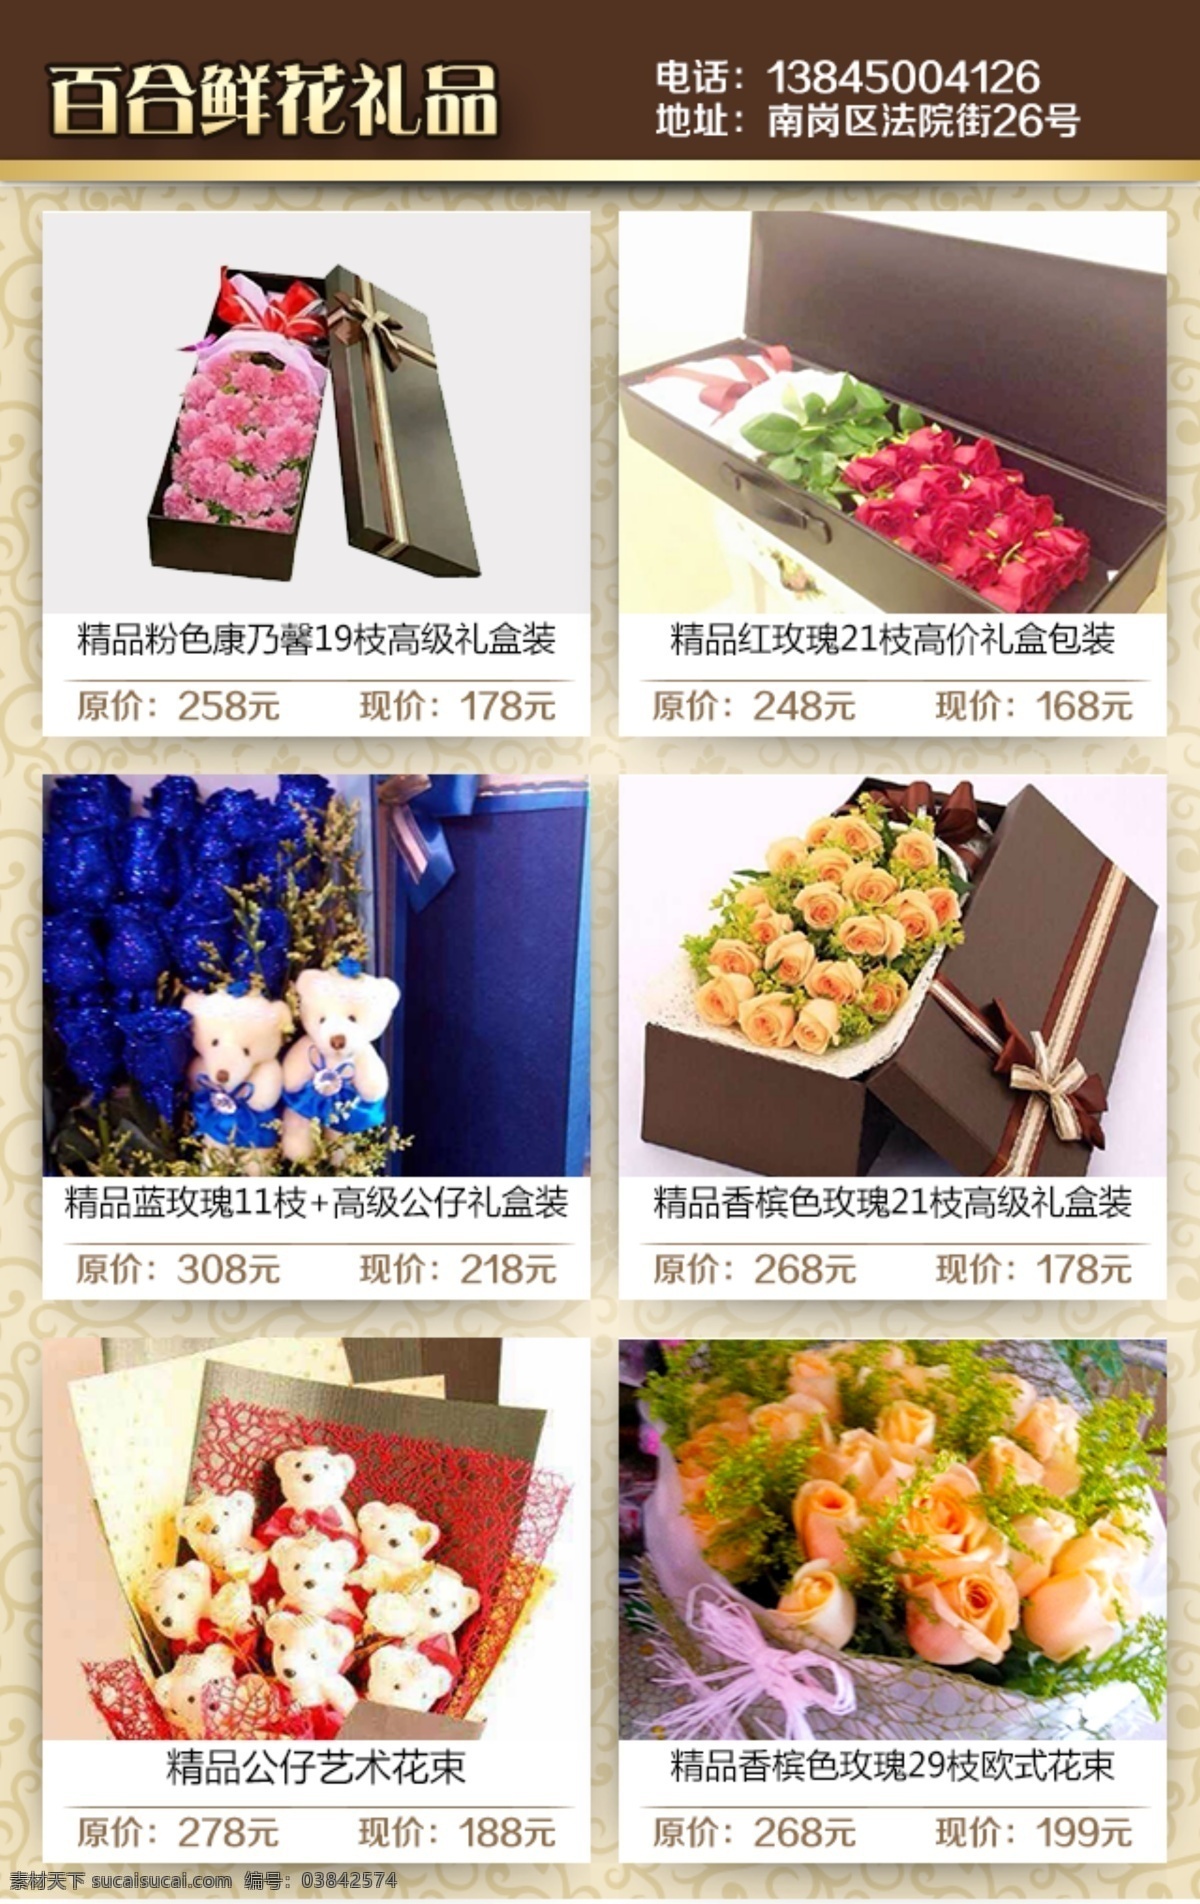 百合 鲜花礼品 礼盒 礼品 手机海报 鲜花 优惠 原创设计 其他原创设计